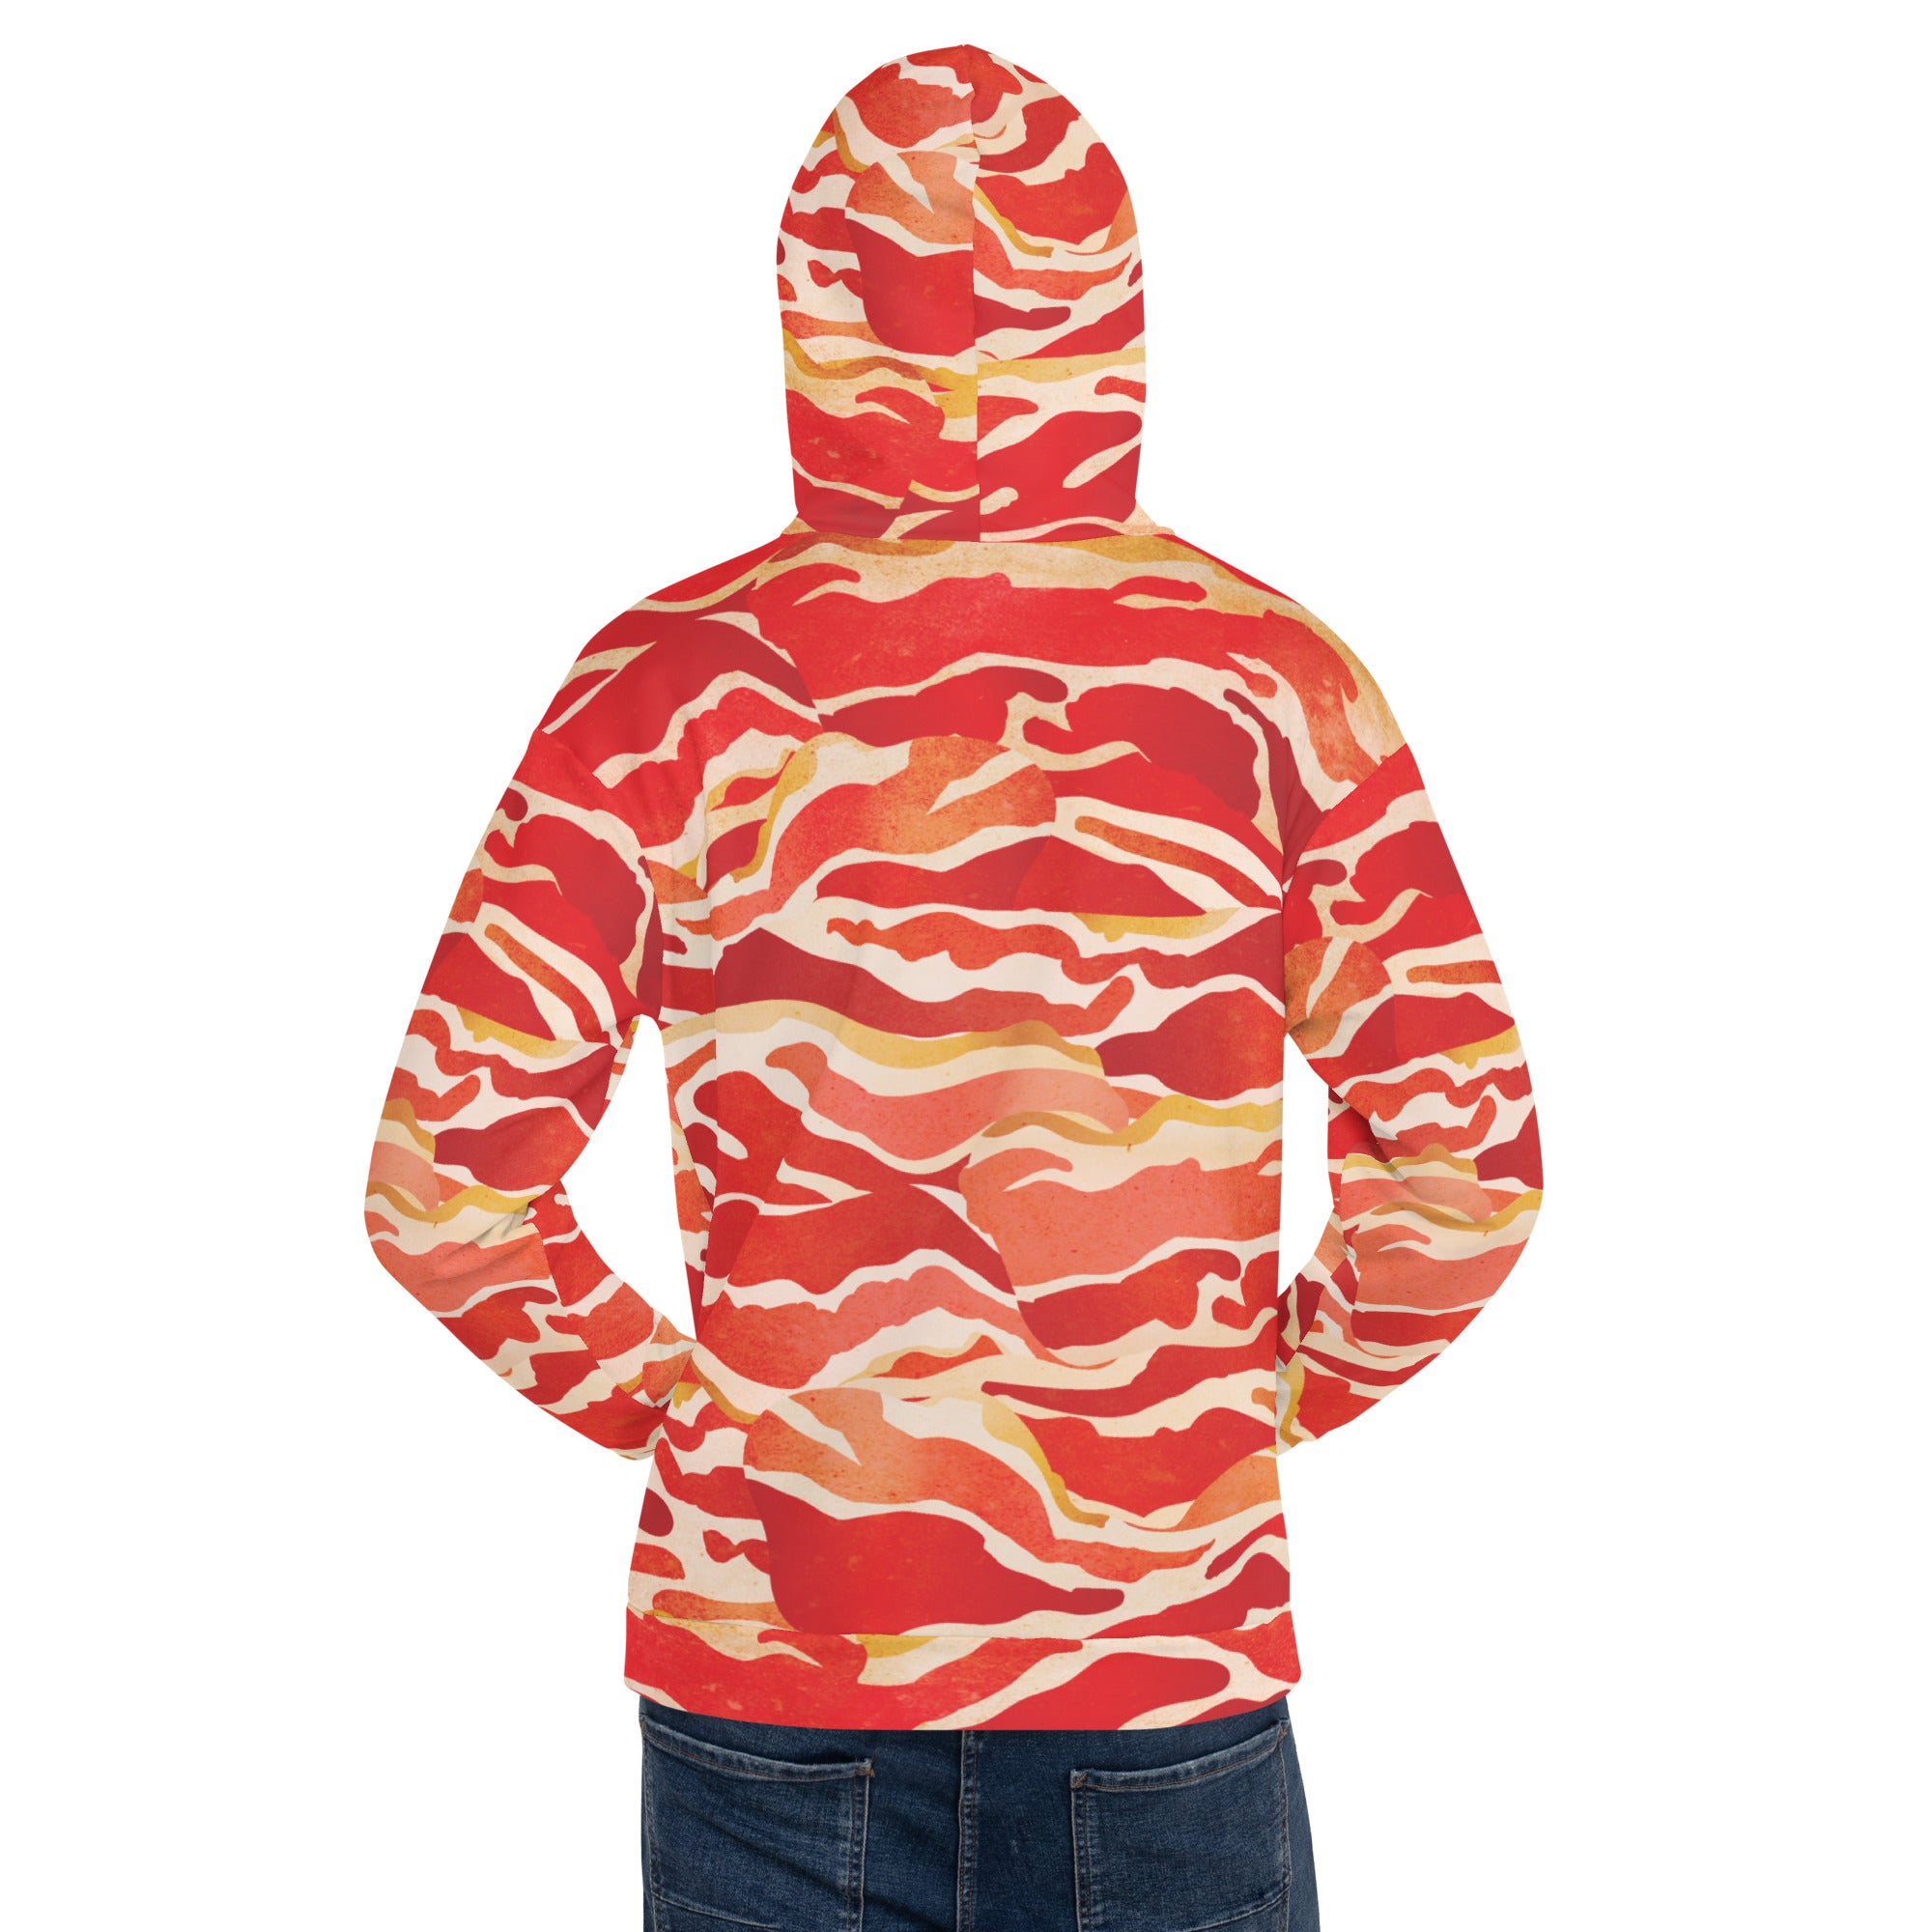 The Liberty Maniacs Bacon Hoodie Sweatshirt